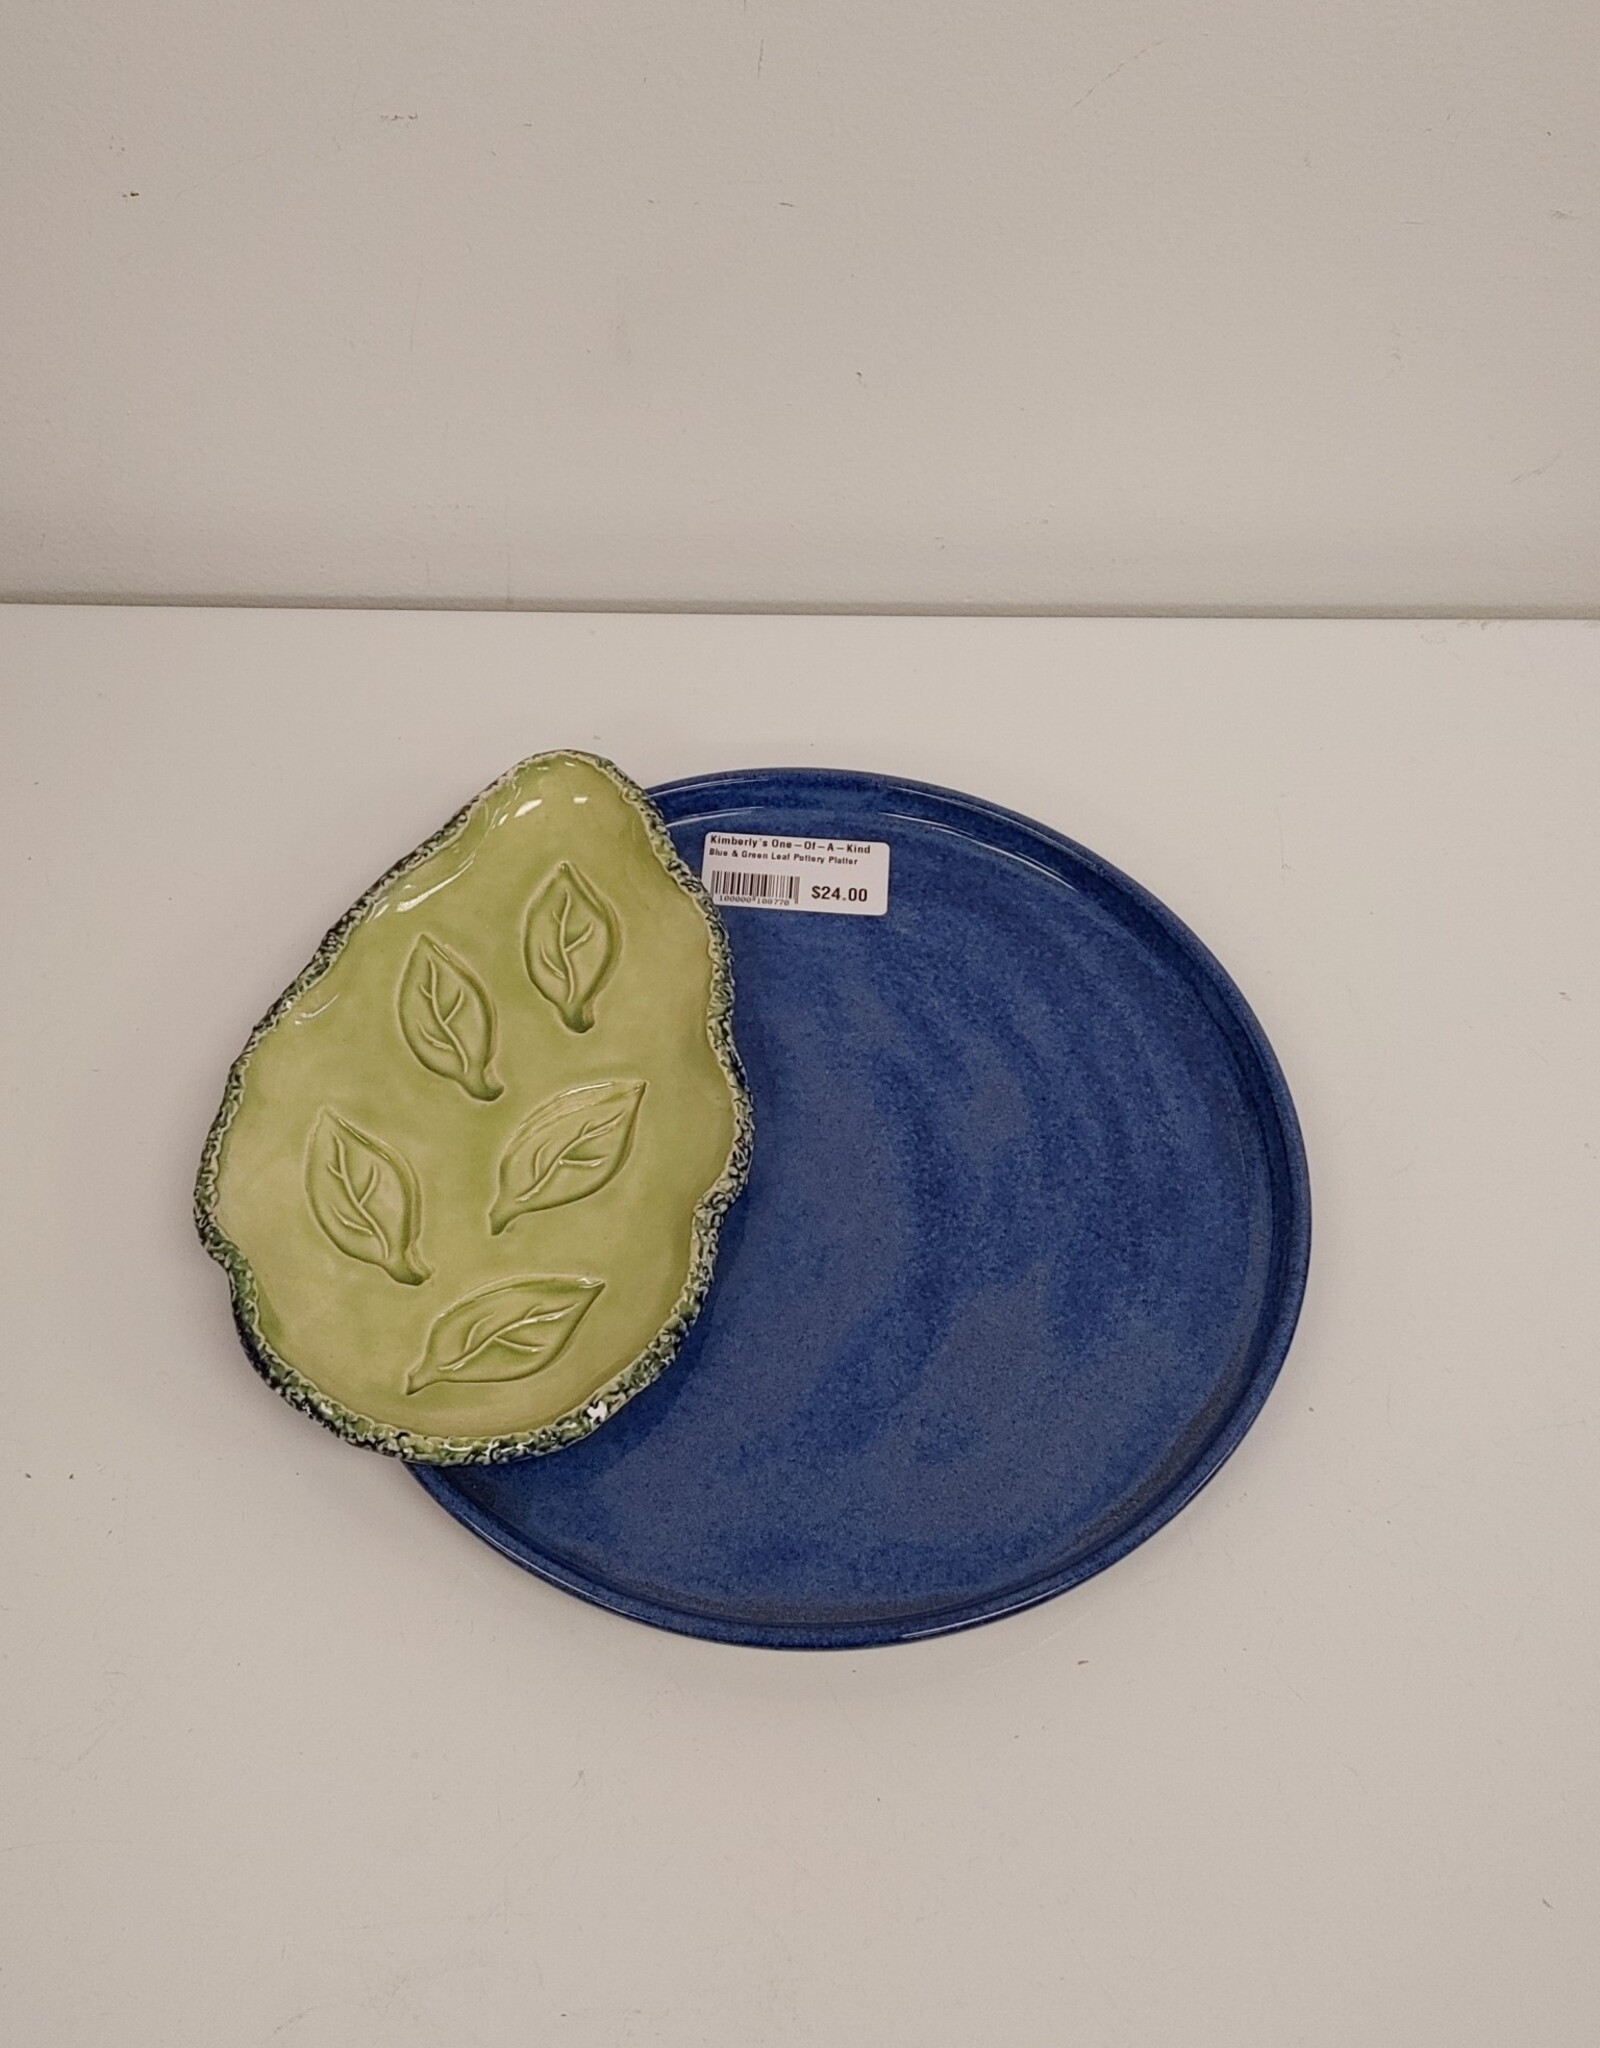 Blue & Green Leaf Pottery Platter